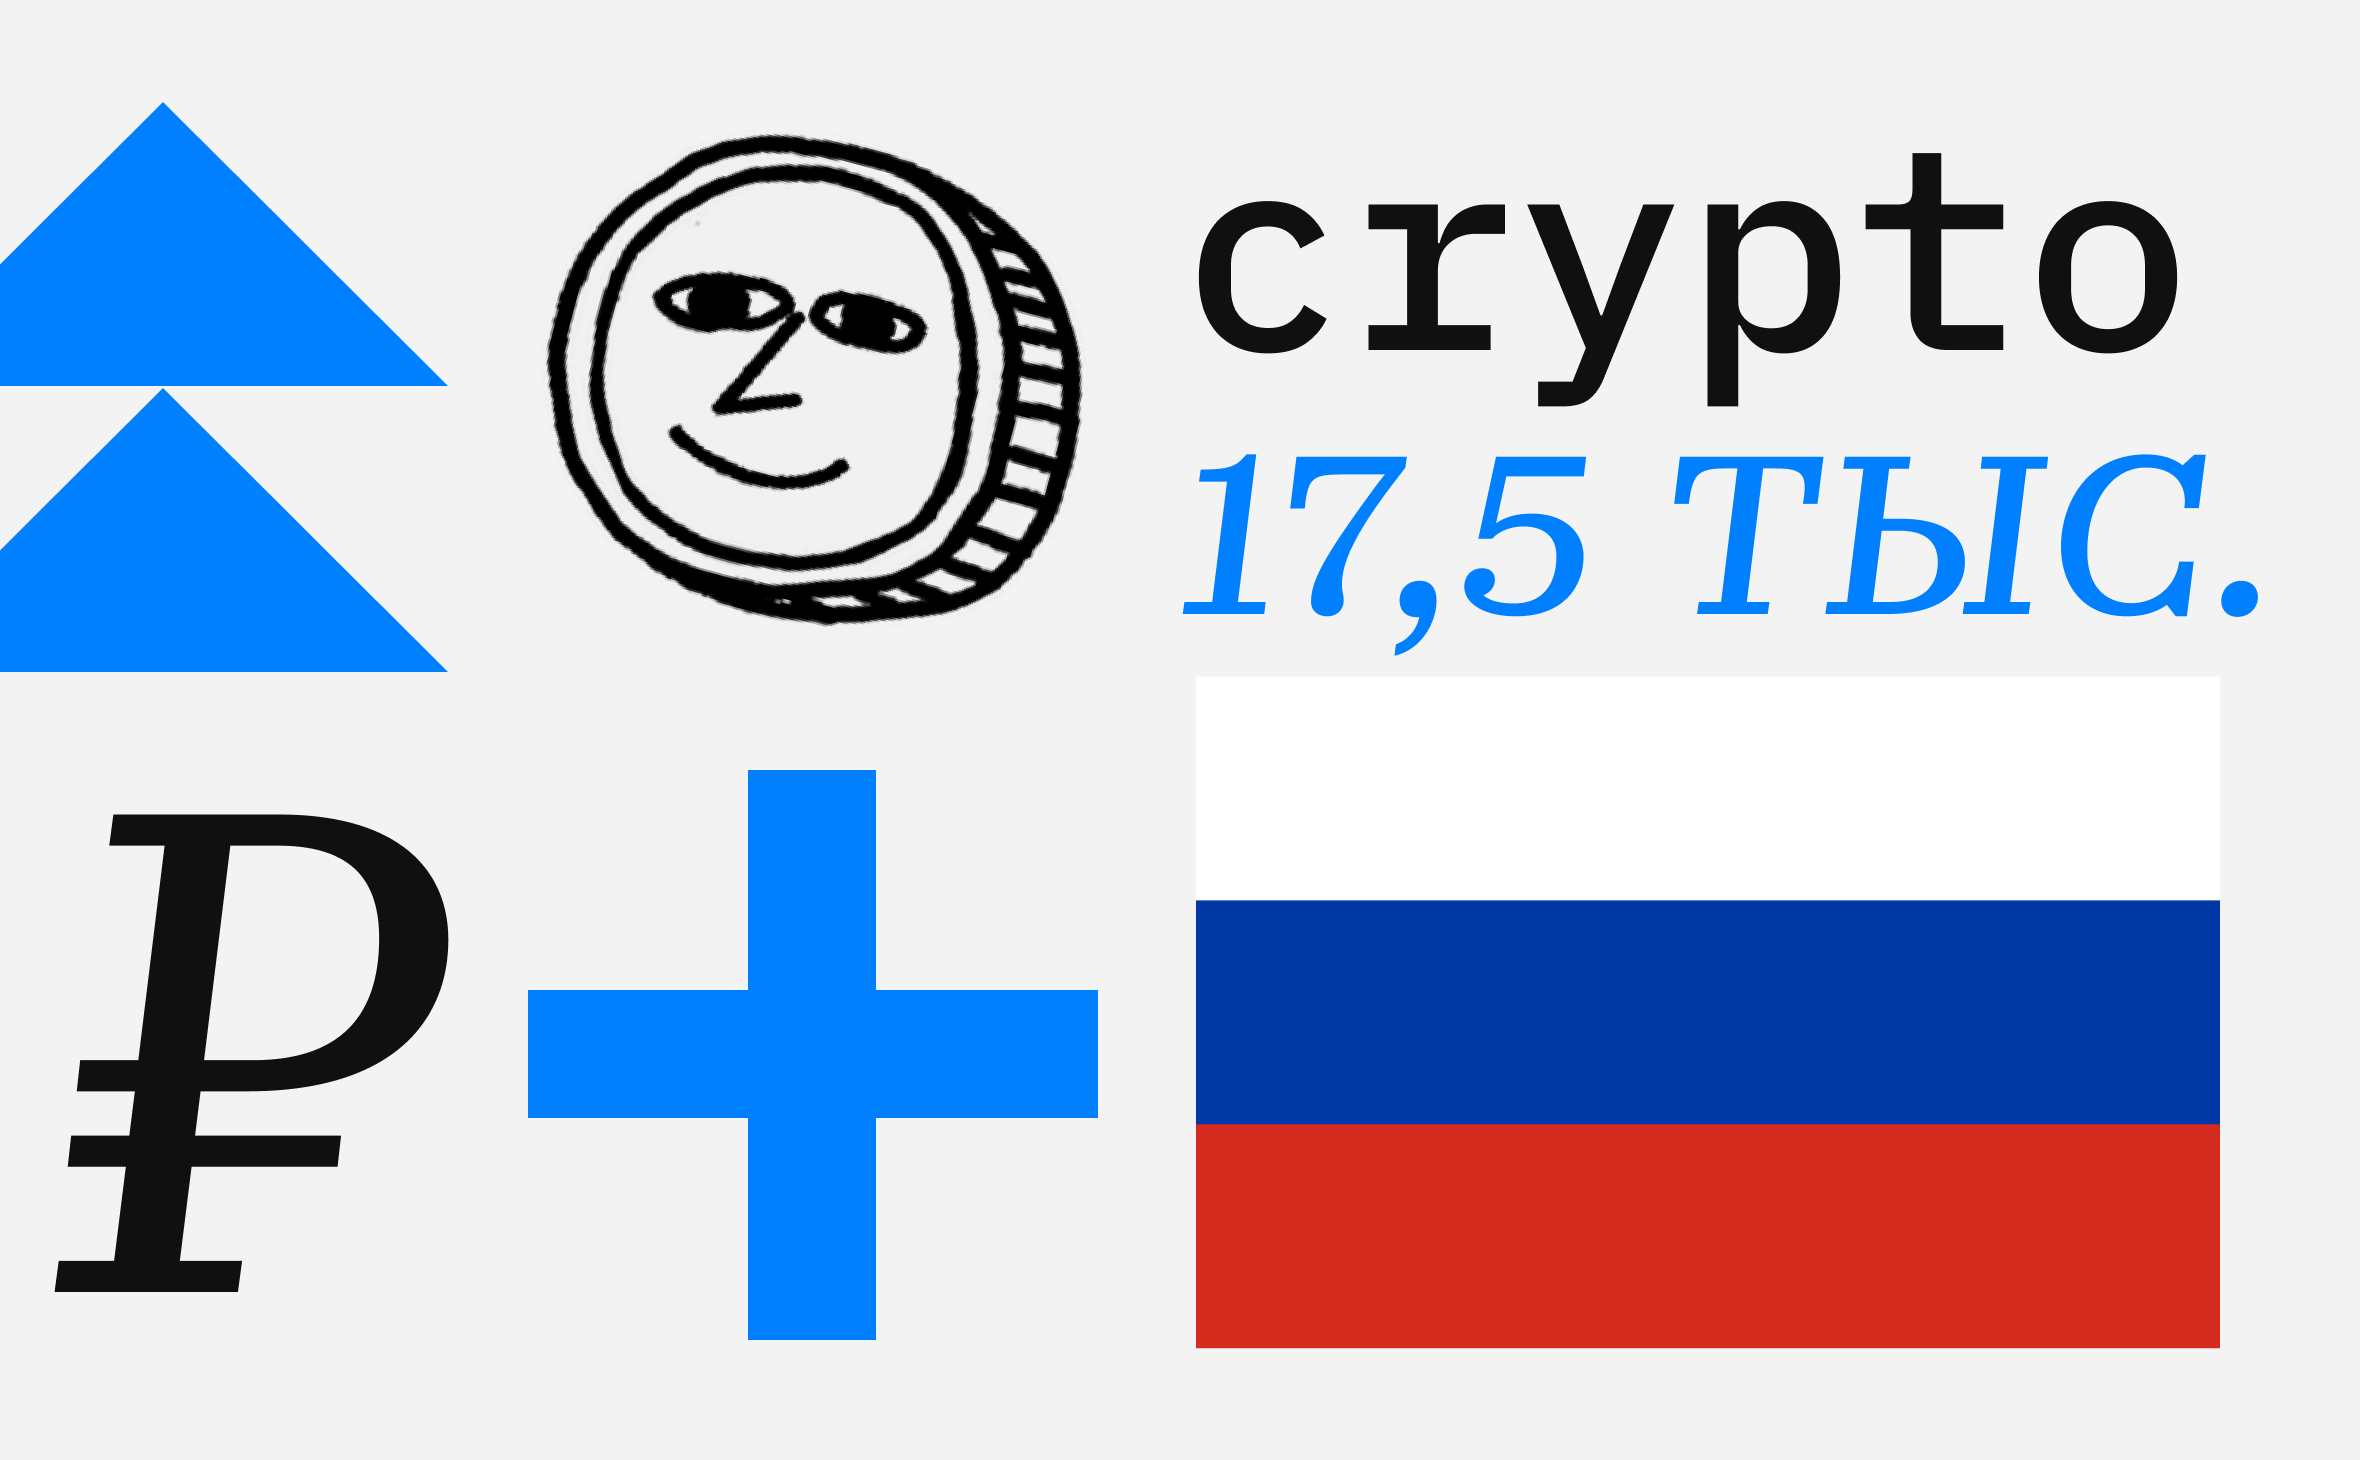 ЦБ: средняя сумма криптовалютных активов россиян составила 17,5 тыс. руб.